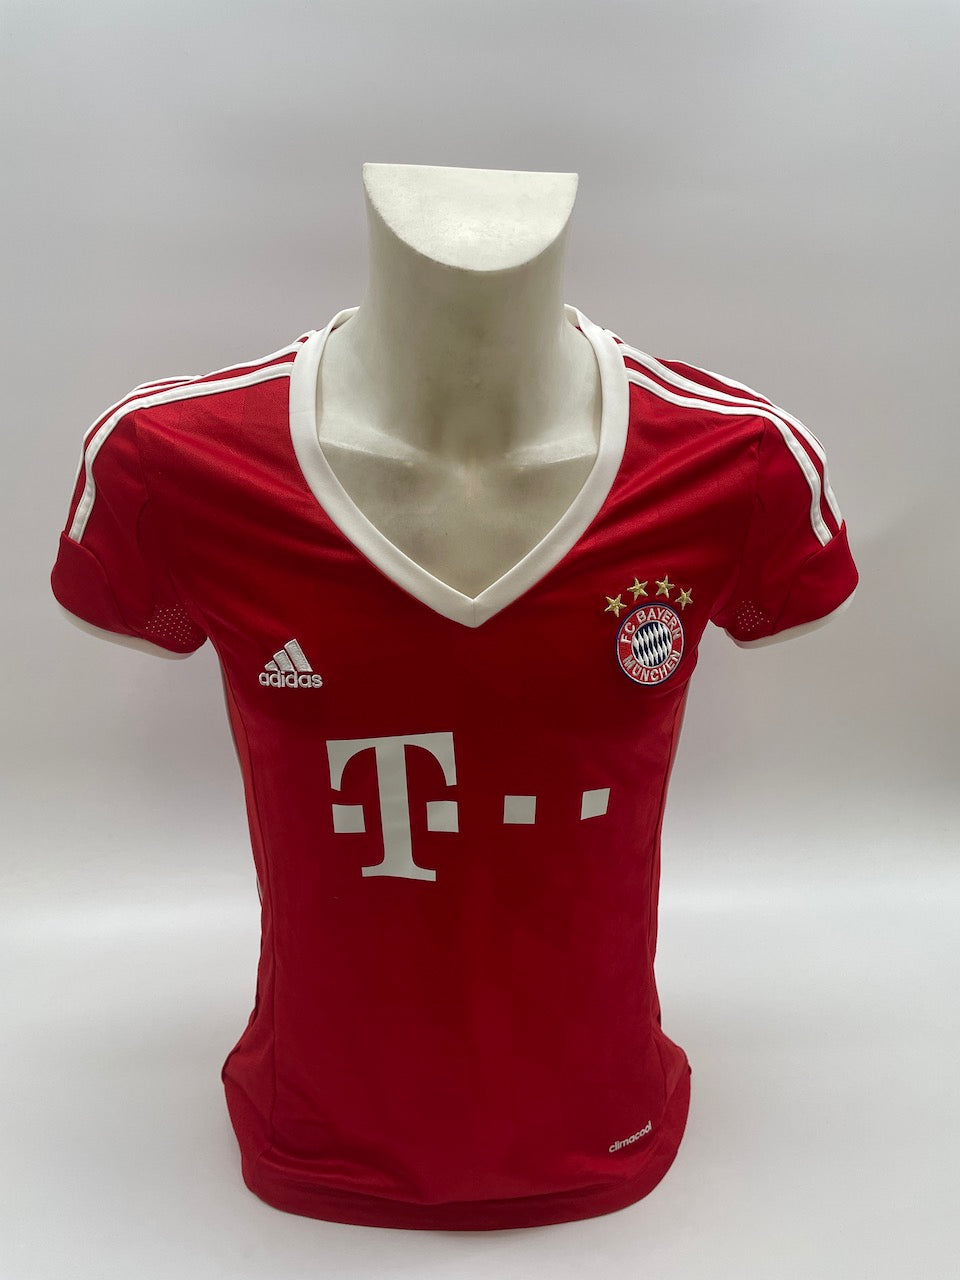 Bayern München Frauentrikot Mario Götze signiert Autogramme Bundesliga Adidas M